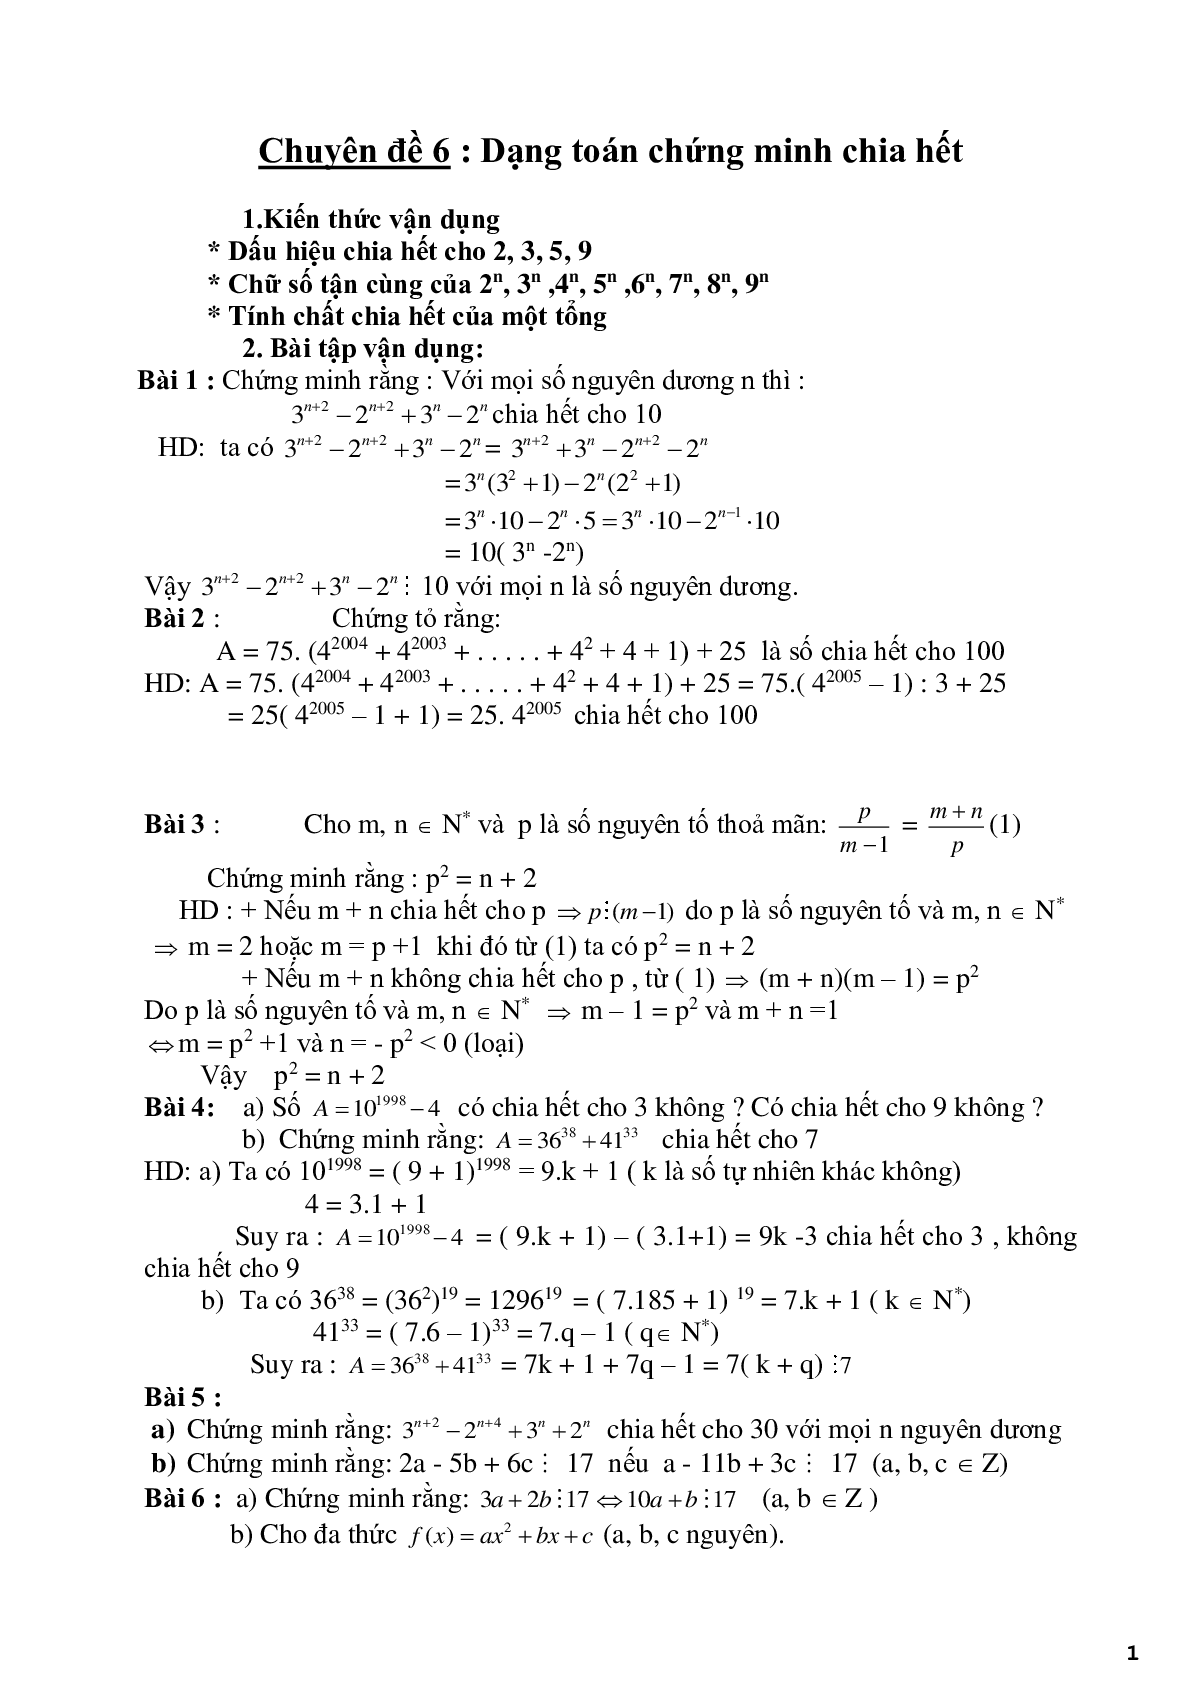 Chuyên đề 6 - Dạng toán chứng minh chia hết - có đáp án (trang 1)